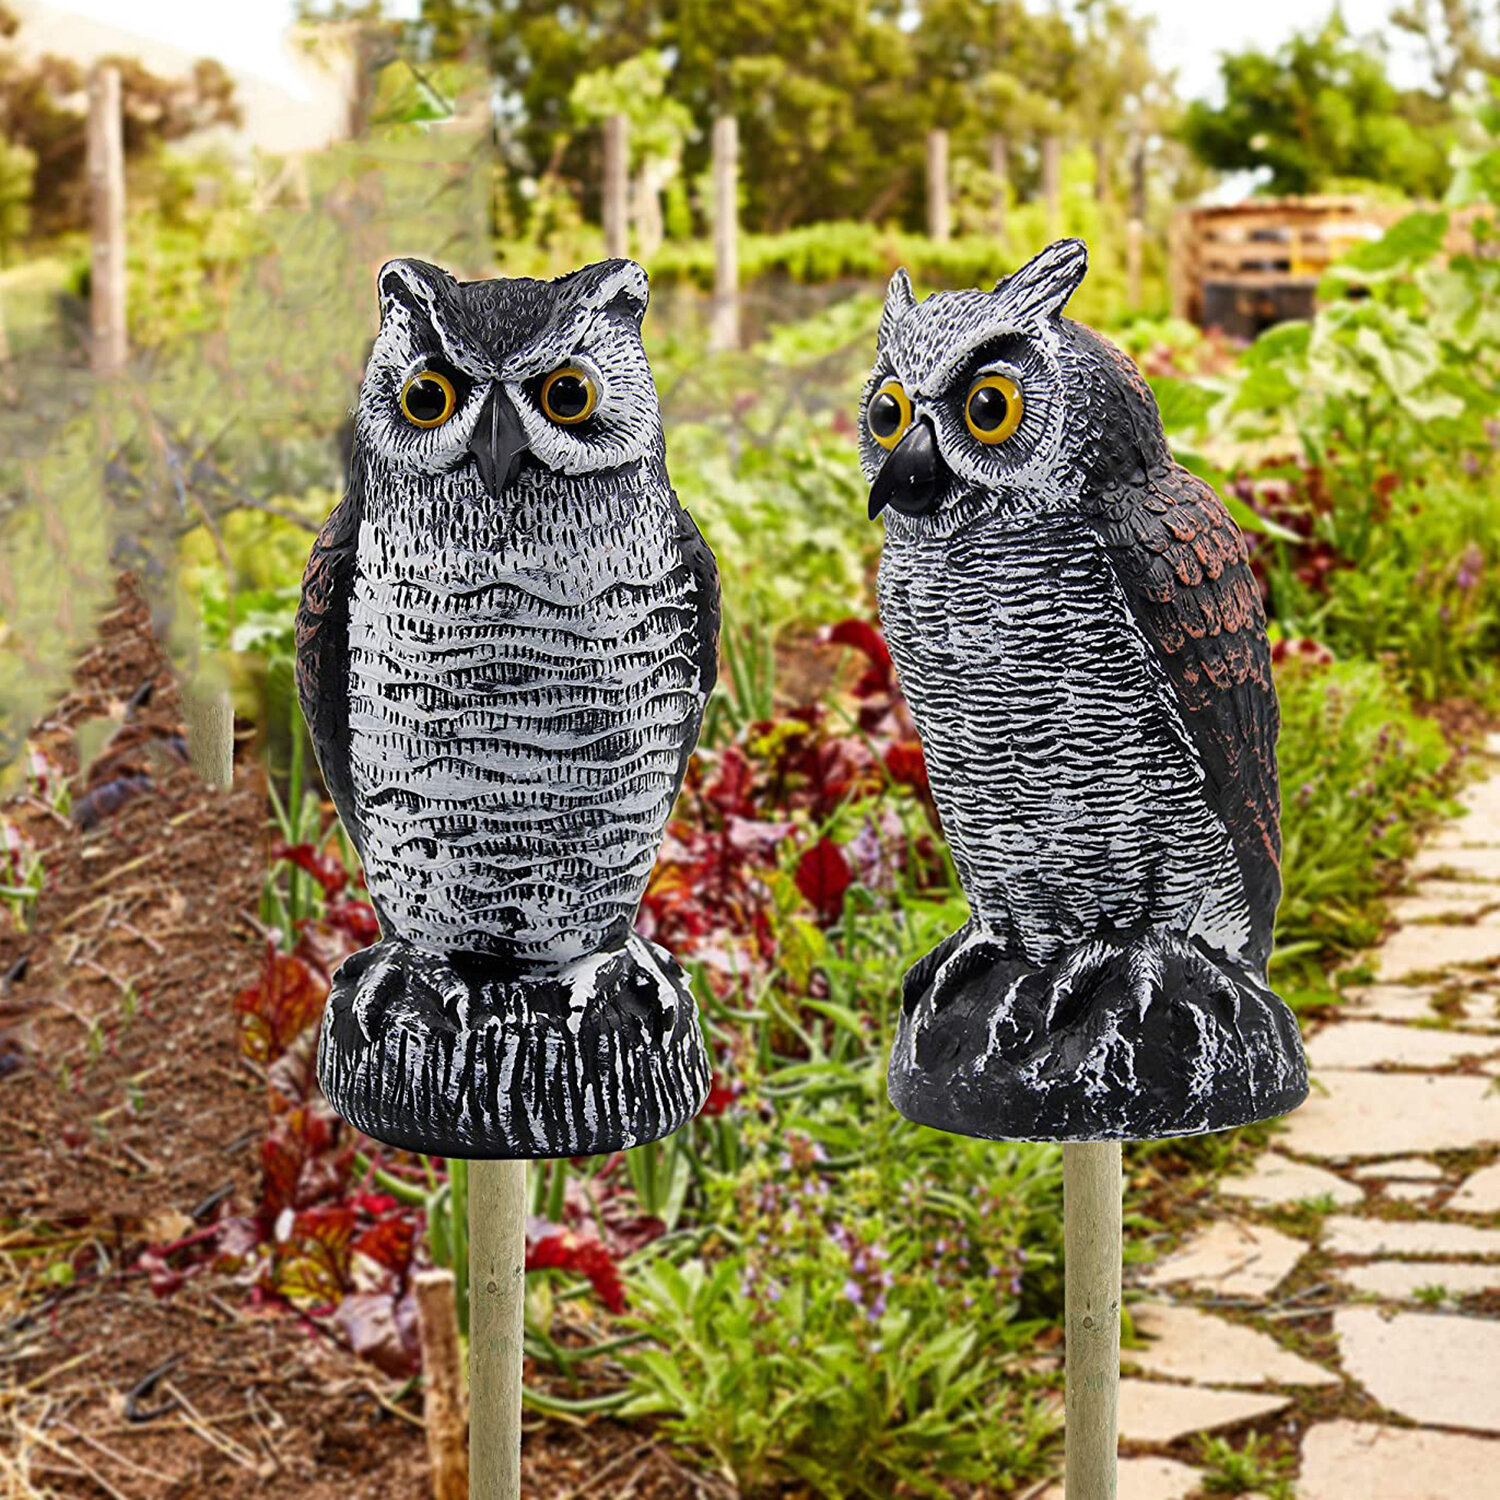  2041 Plastic Owl Bird Deterrents Horned Owl Bird Scarecrow Pest Repellent For Outdoor Garden Yard